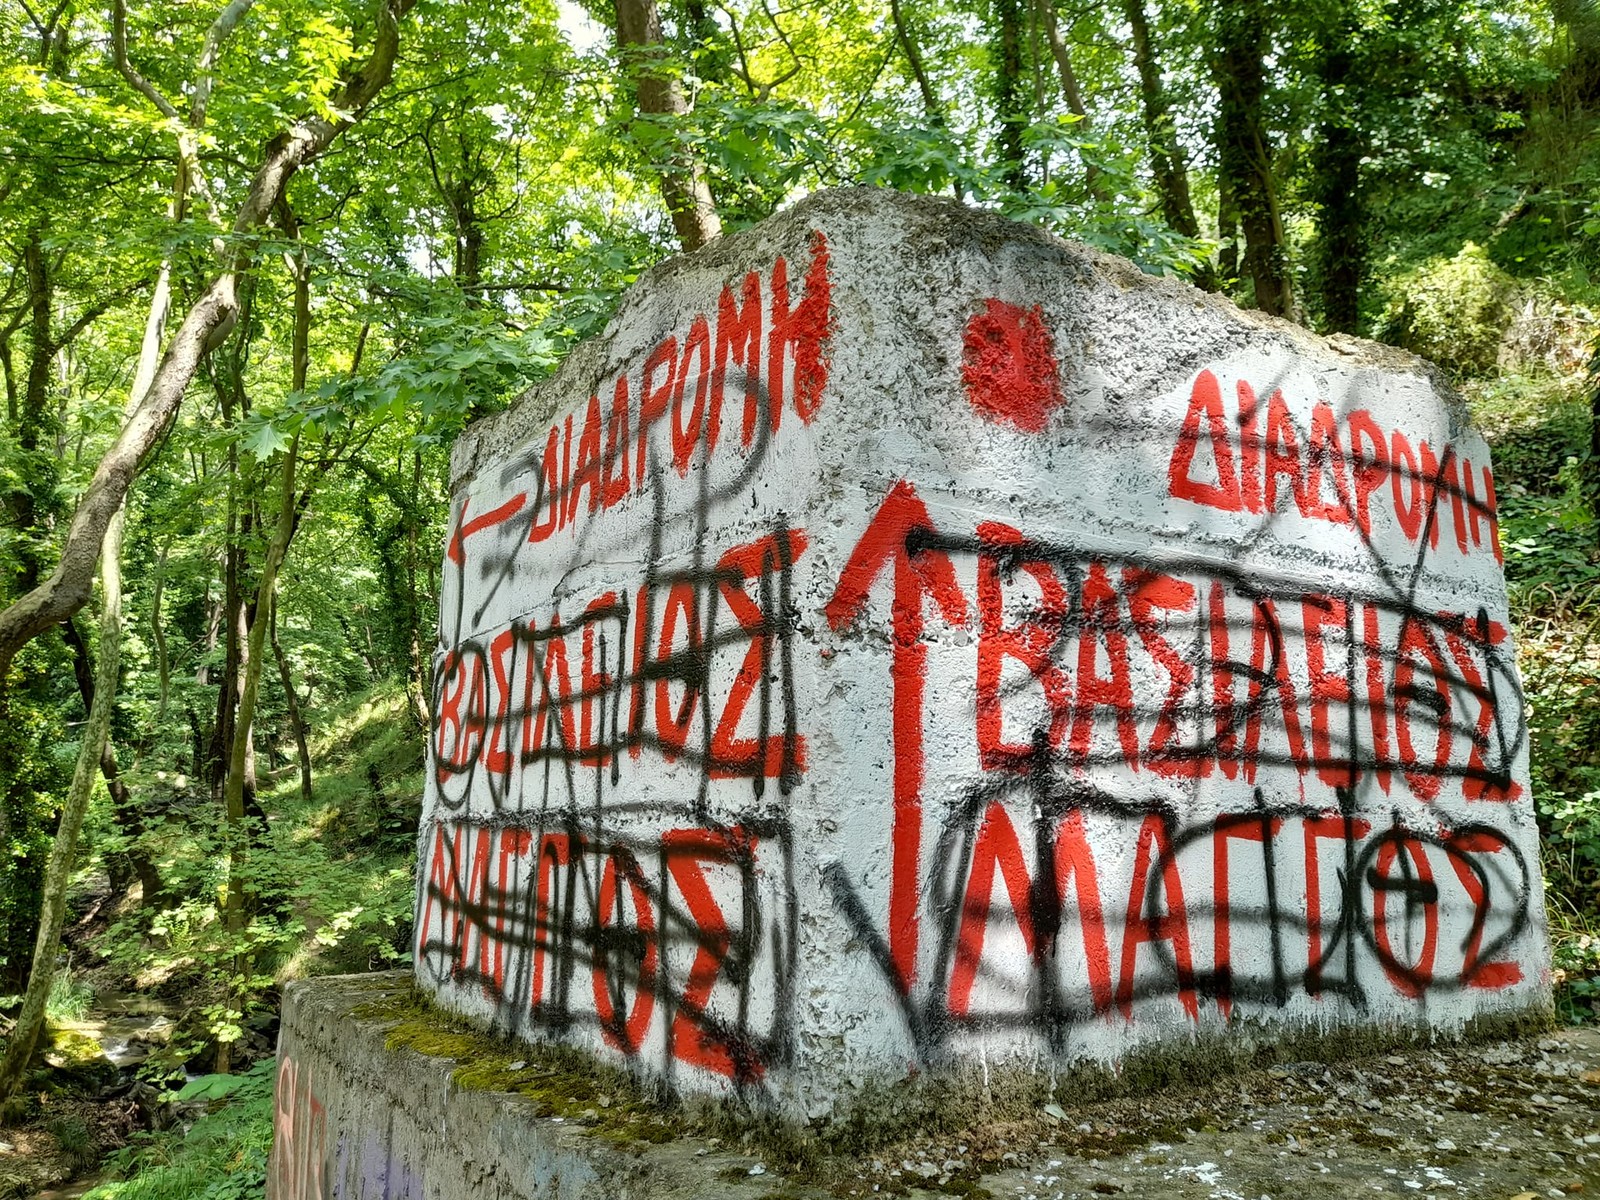 Ο Γιάννης Μάγγος έβαλε στη θέση τους τους φασίστες που έσβησαν την τοιχογραφία του γιού του